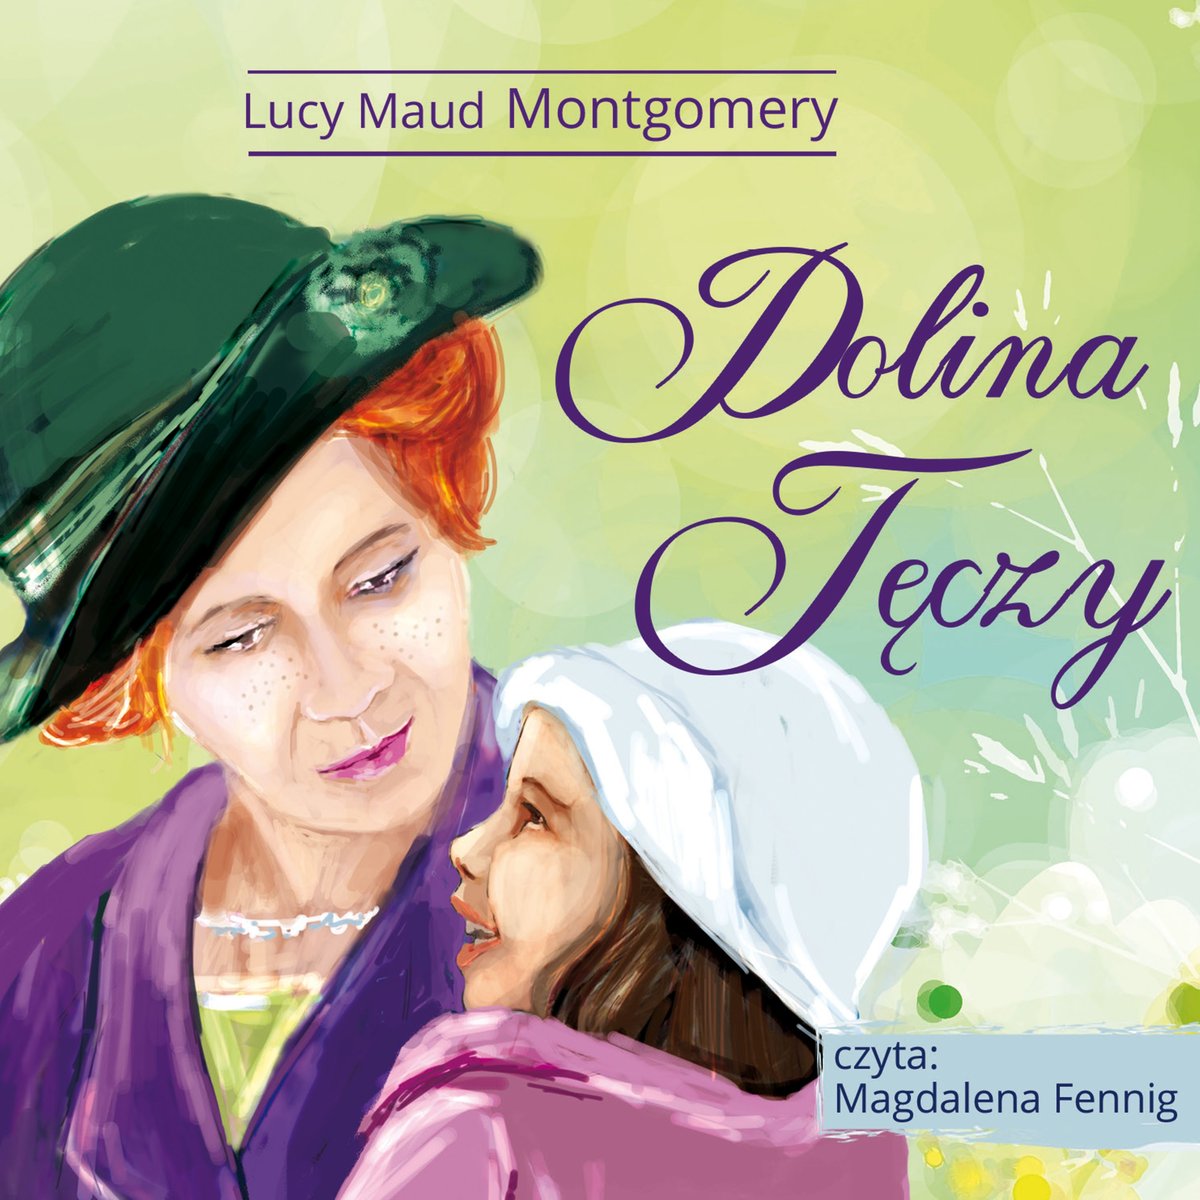 Montgomery Lucy Maud – Dolina Tęczy